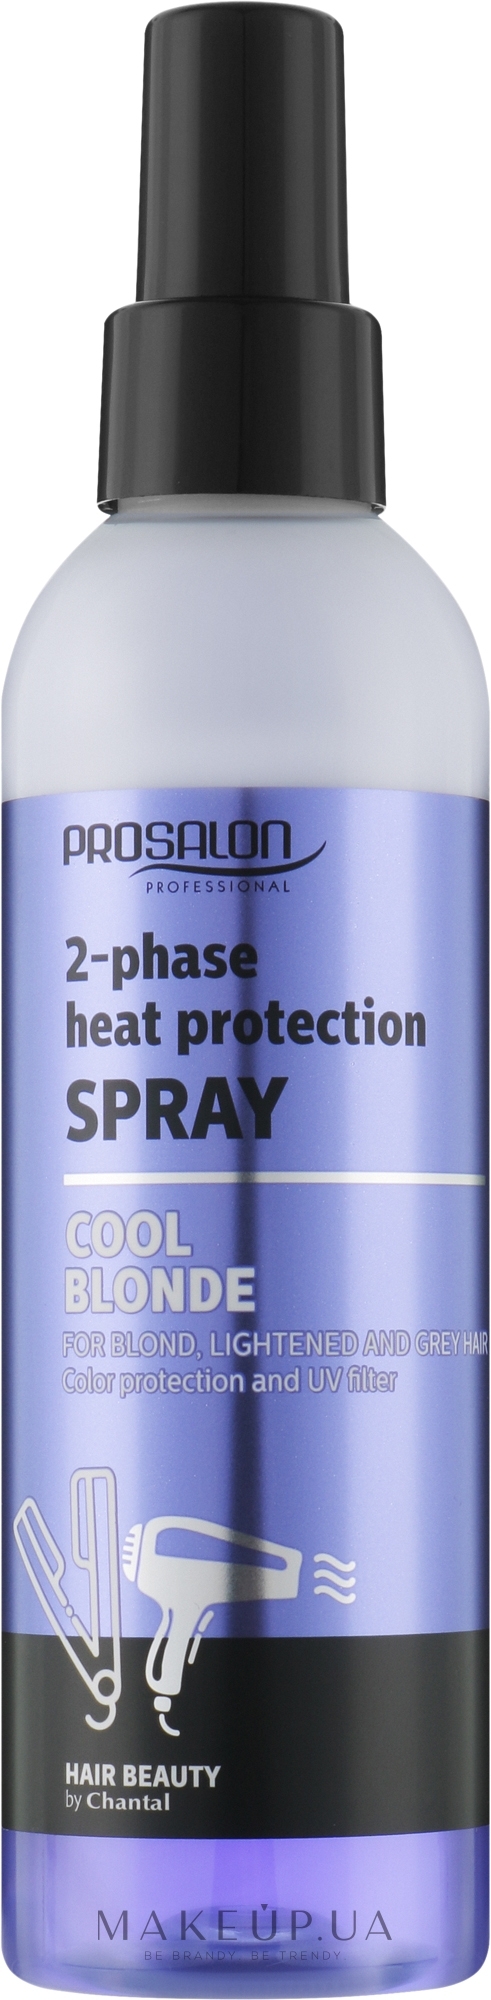 Двофазний термозахисний спрей для світлого волосся - Prosalon Cool Blonde 2-Phase Heat Protection Spray — фото 200ml